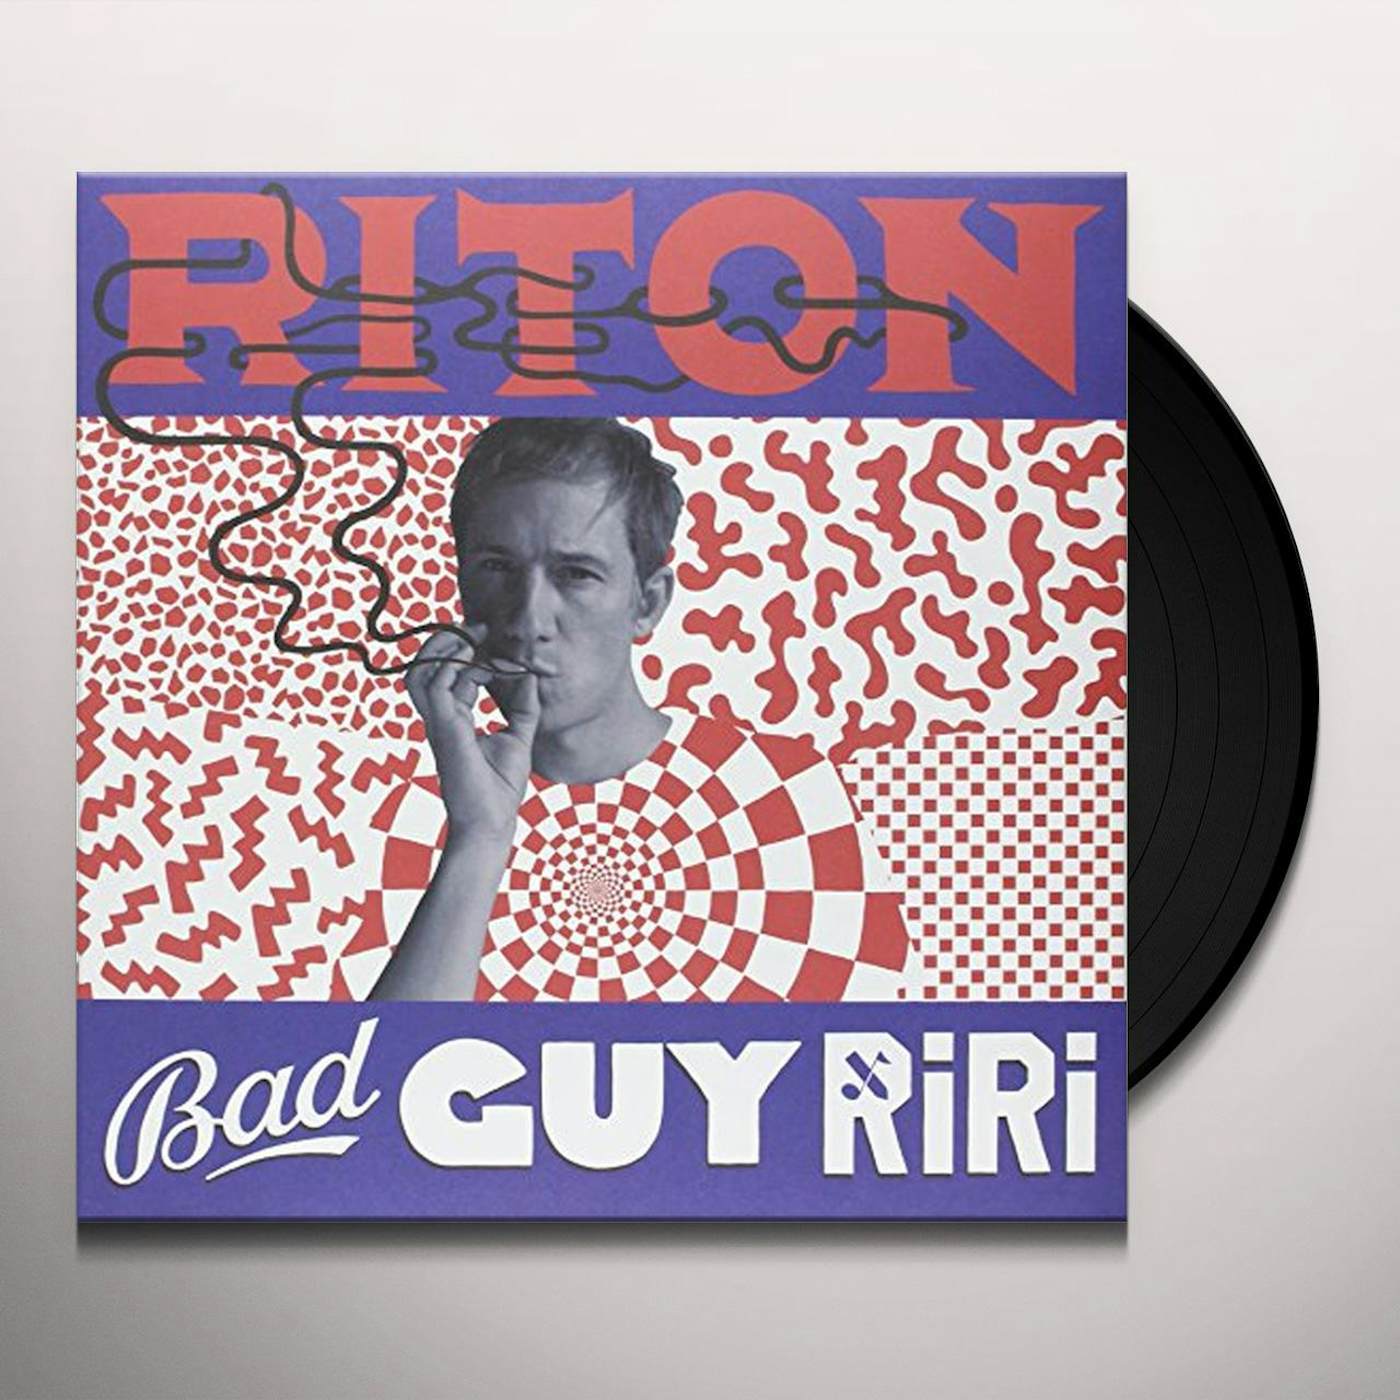 Riton Bad Guy Ri Ri Vinyl Record